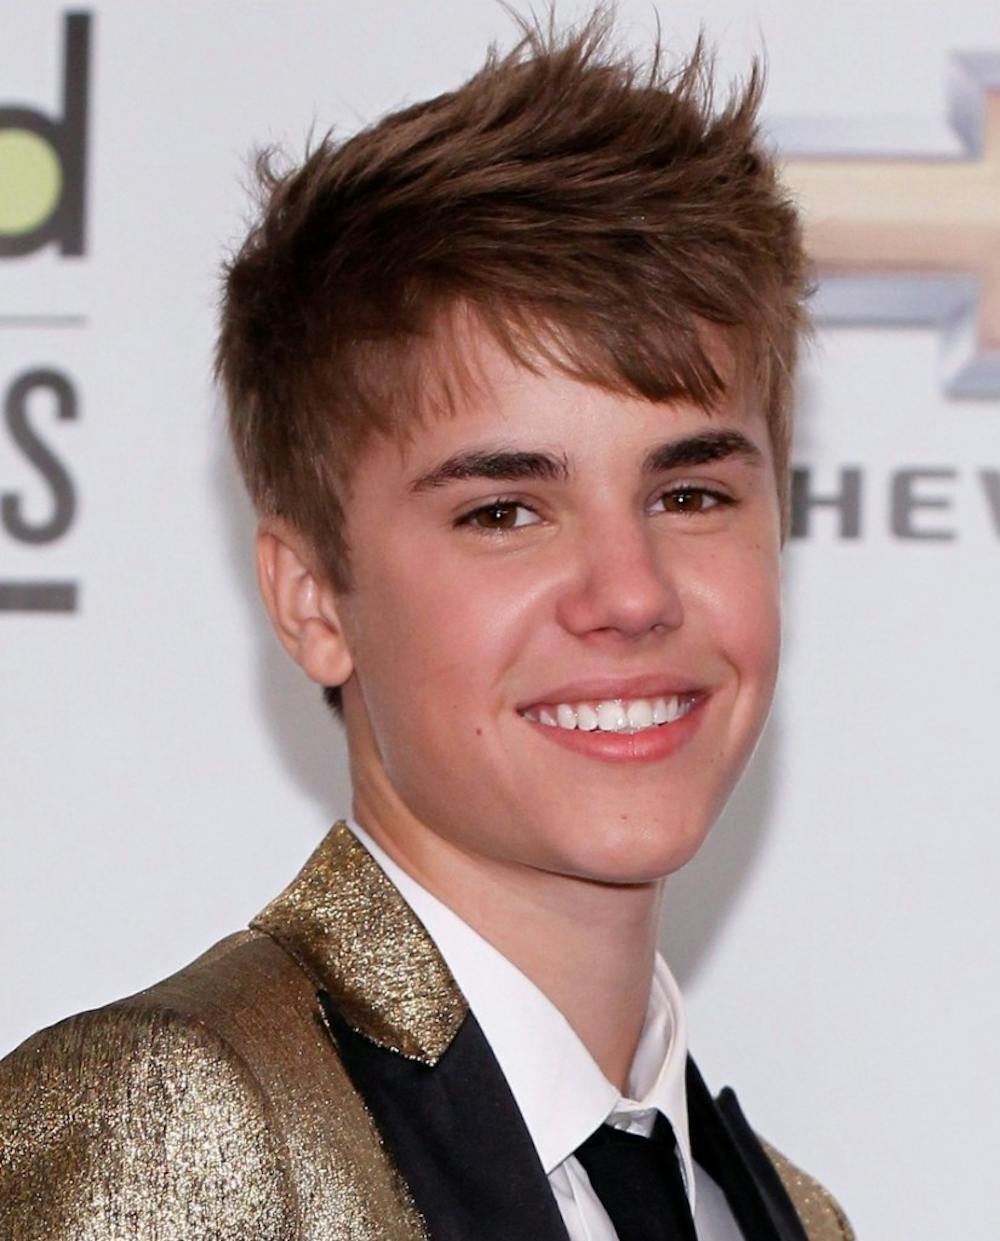 <p><em>Justin Bieber returns to the stage at NHL afterparty. (Photo courtesy of </em><a href="https://flic.kr/p/apGfsK" target=""><em>Flickr</em></a><em> / “Justin Bieber Billboard Music Awards 2011-12” by iLoveJB123 / September 23, 2011)</em></p>